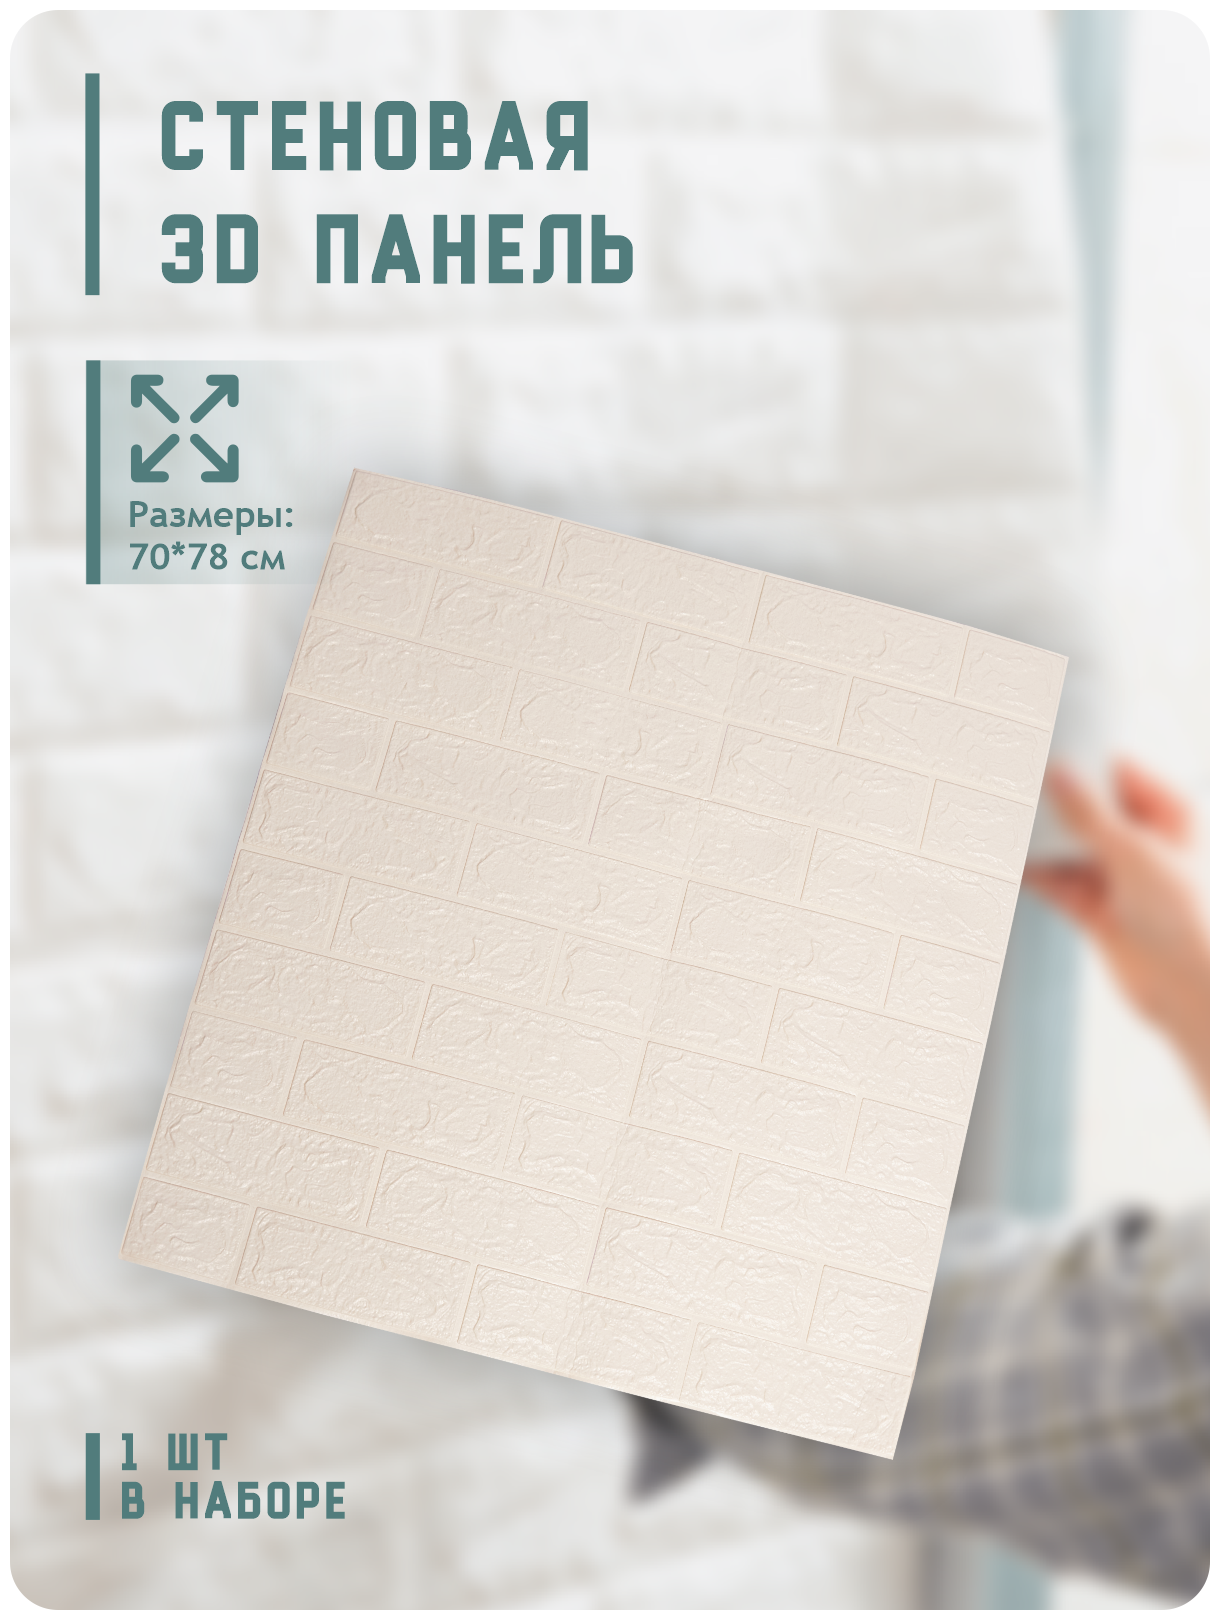 Панели ПВХ Кирпич самоклеющиеся для внутренней отделки стен декоративные 70x78 см 3d панели стеновые листовые белые